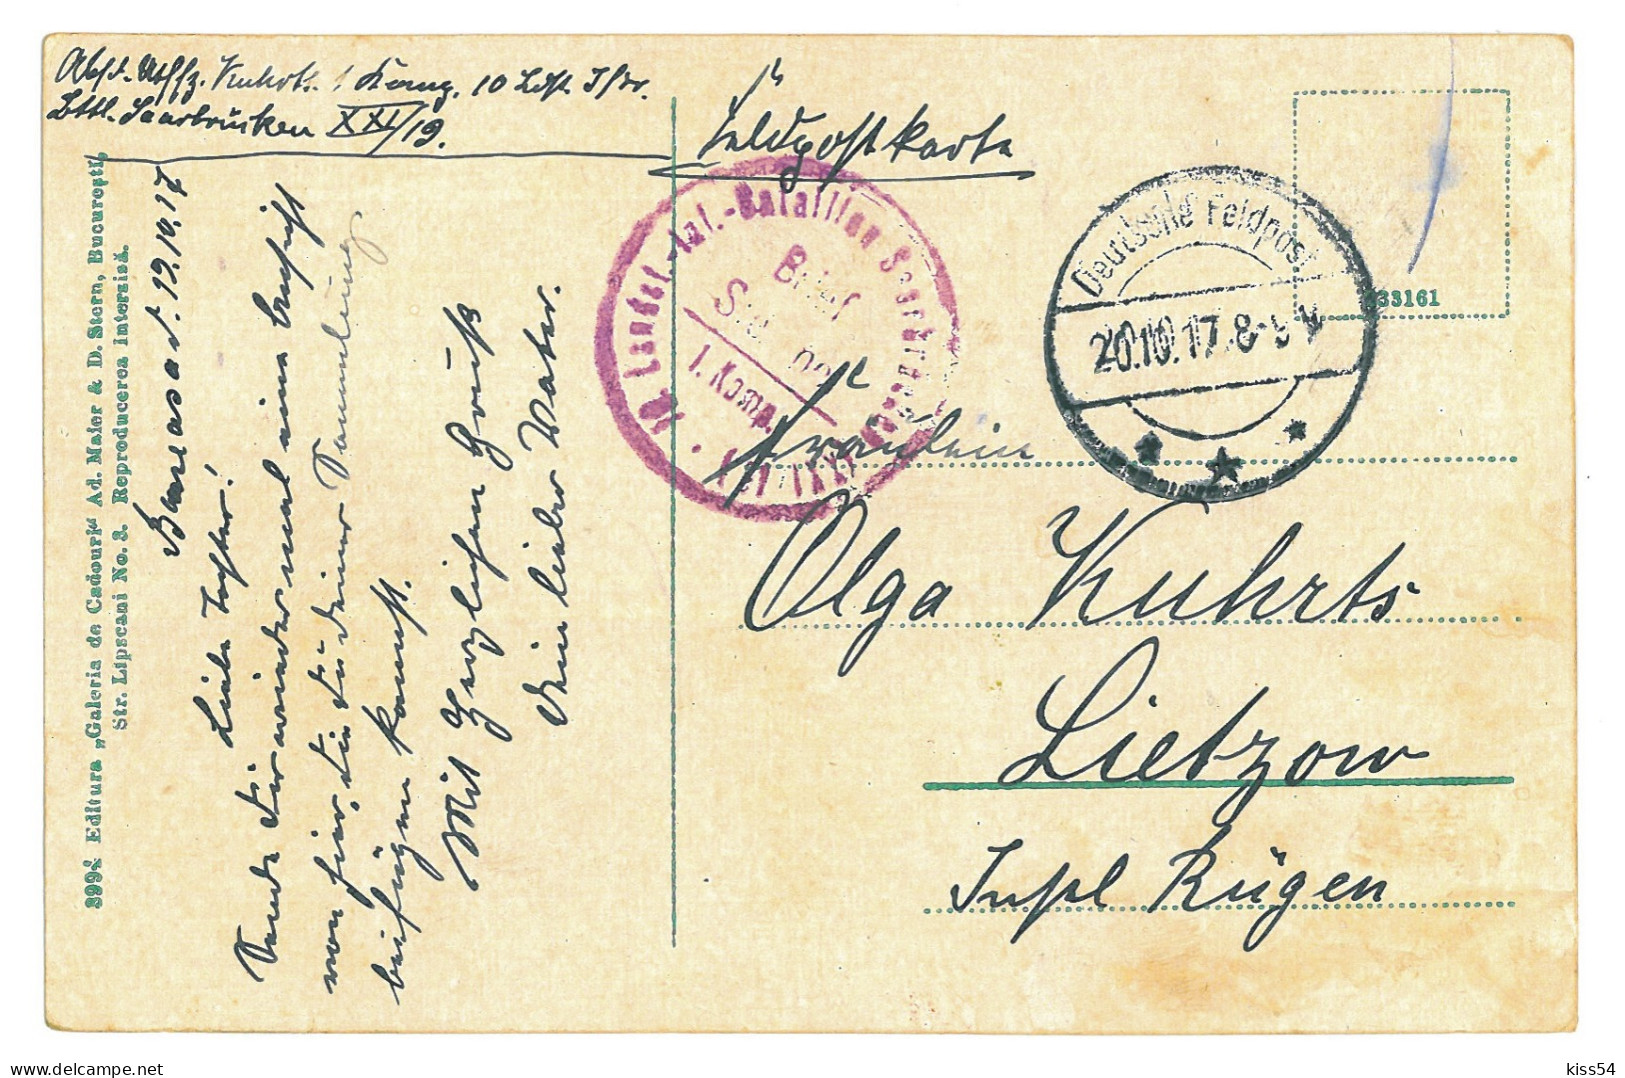 RO 45 - 22643 RUCAR, Brasov, ETHNIC, Romania - Old Postcard, CENSOR - Used - 1917 - Roemenië